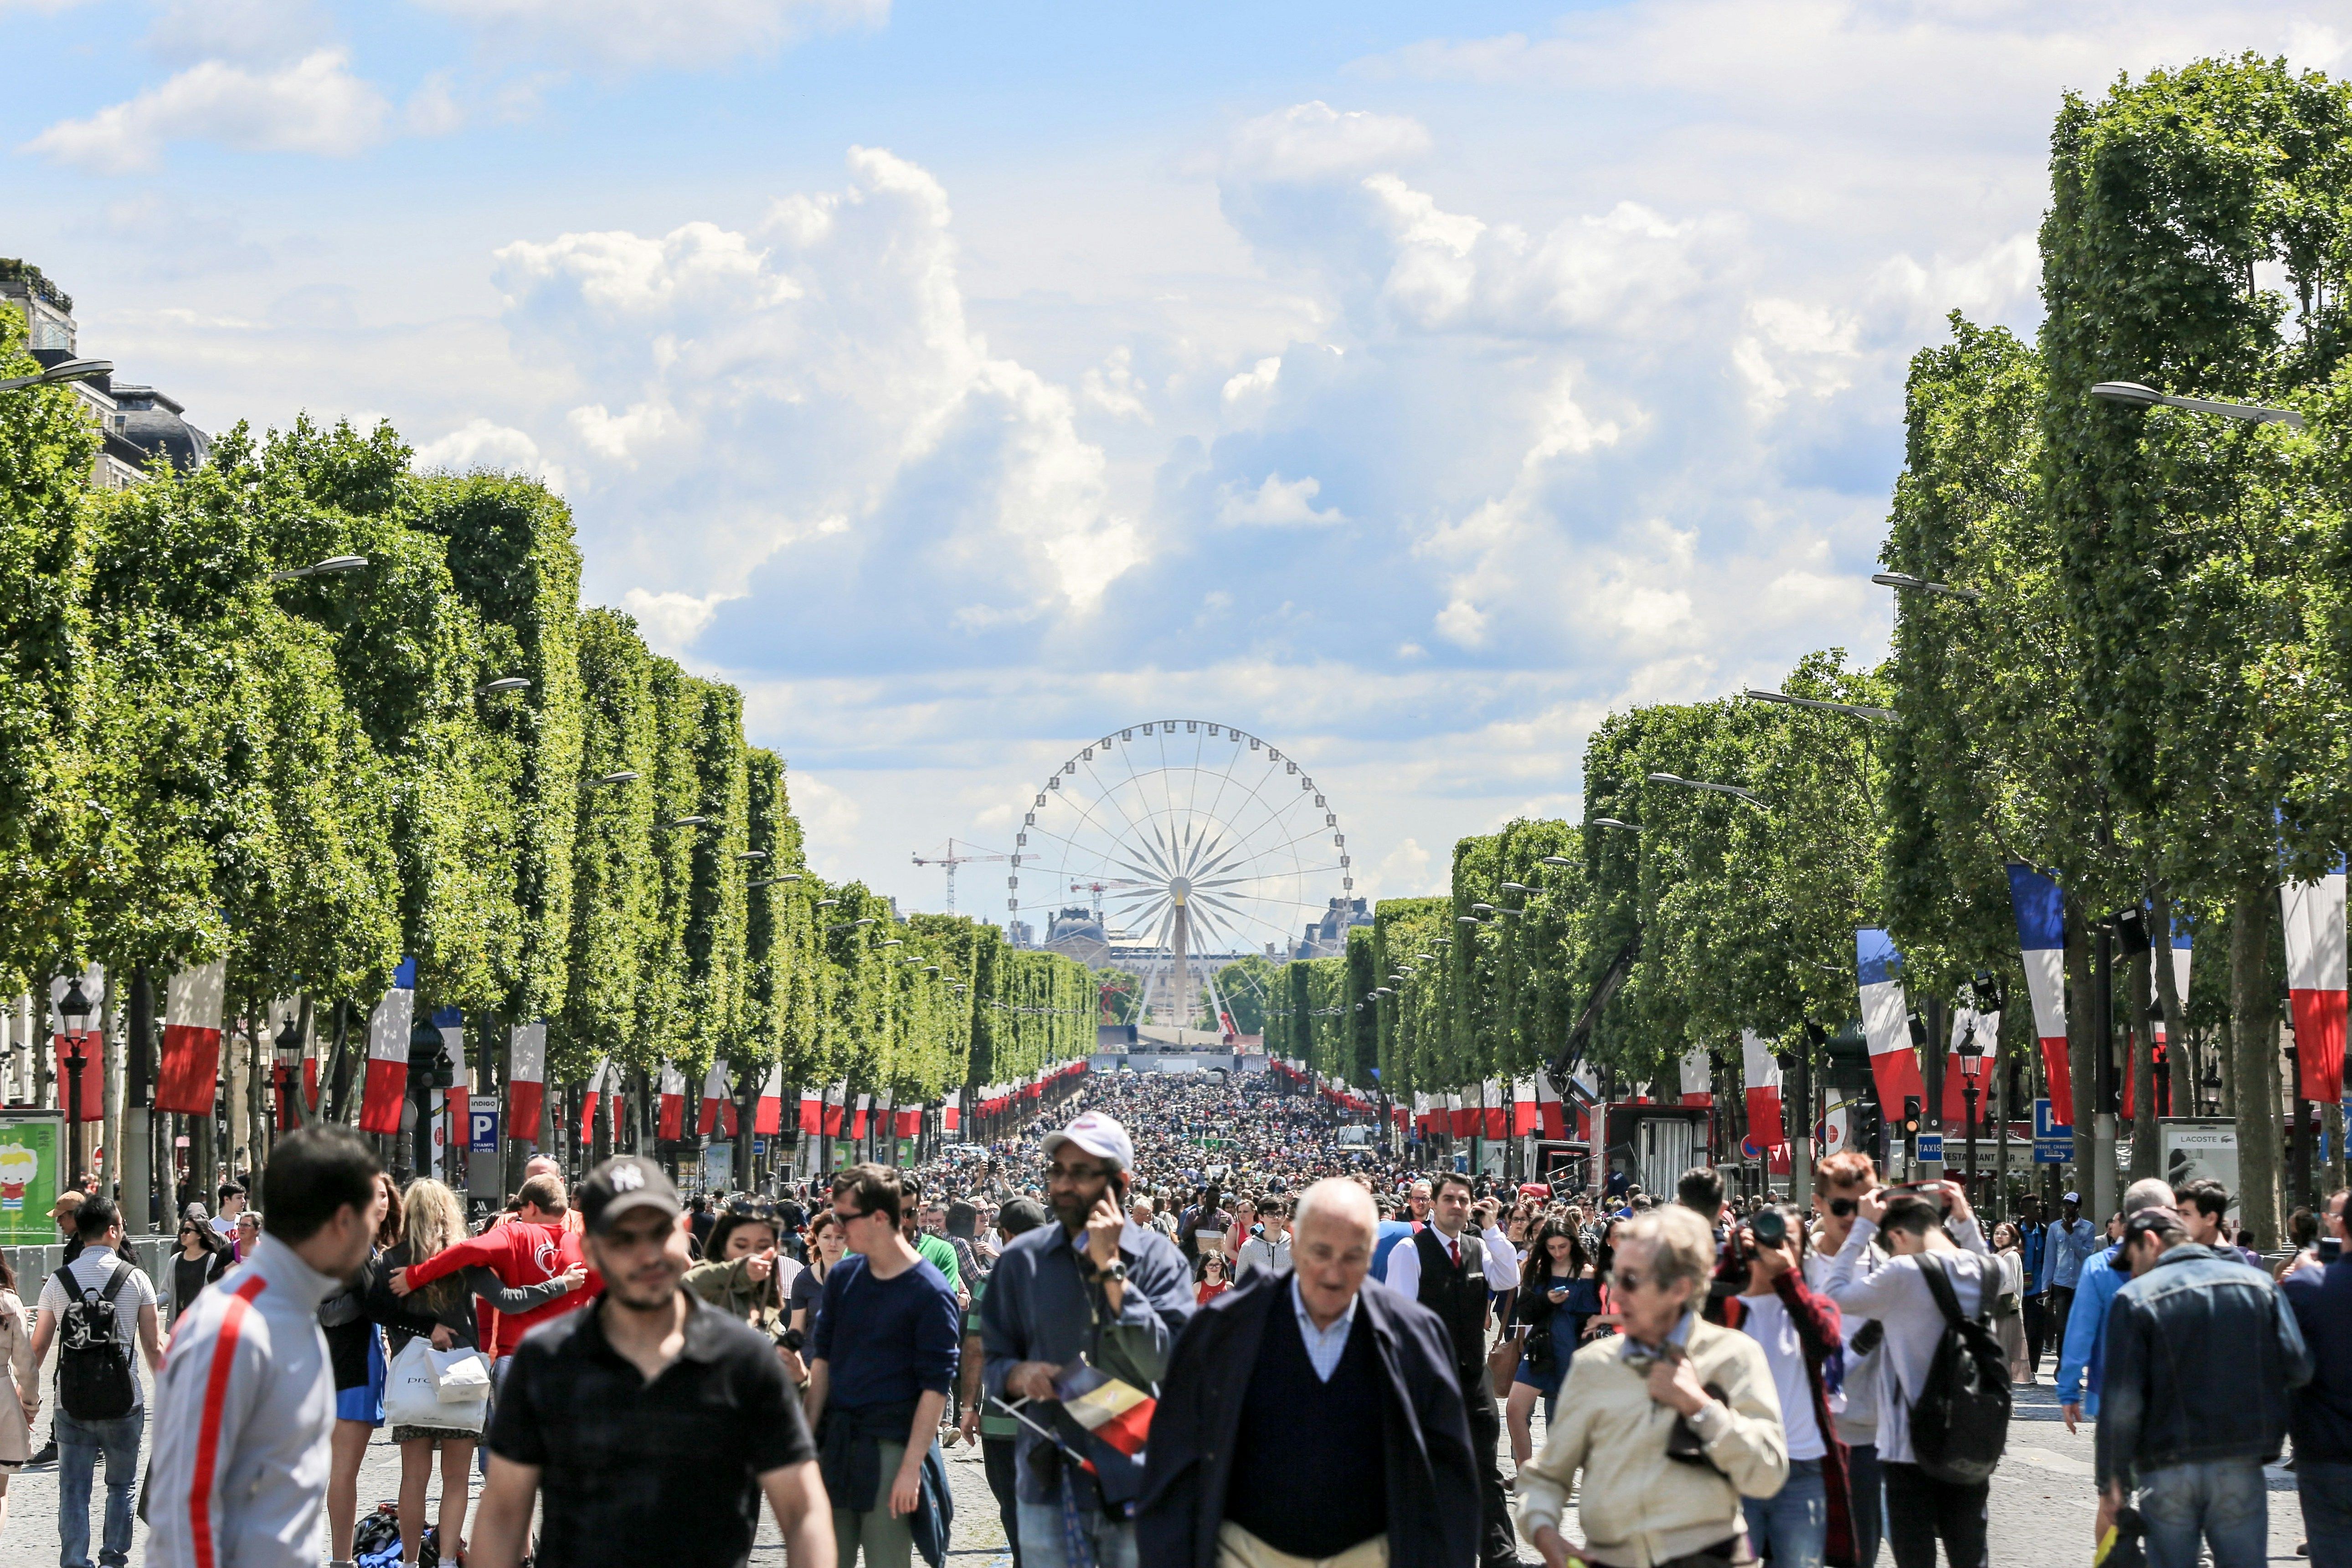 Єлисейські поля в Парижі на день перетворяться на майданчик для пікніка